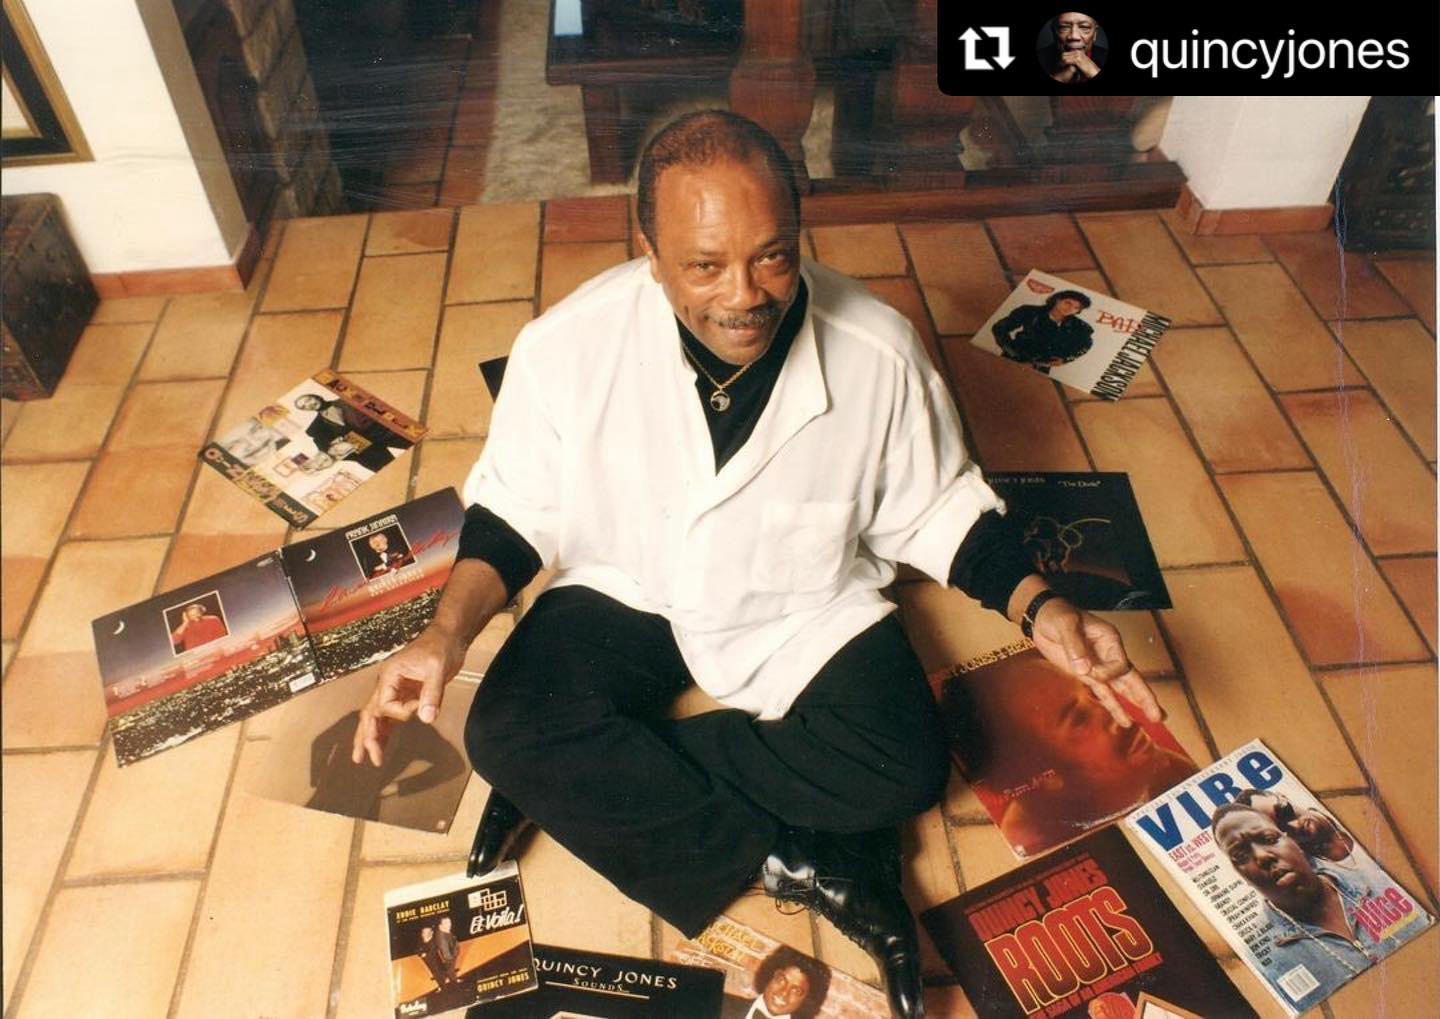 Happy 90th Birthday to the legend, Quincy Jones